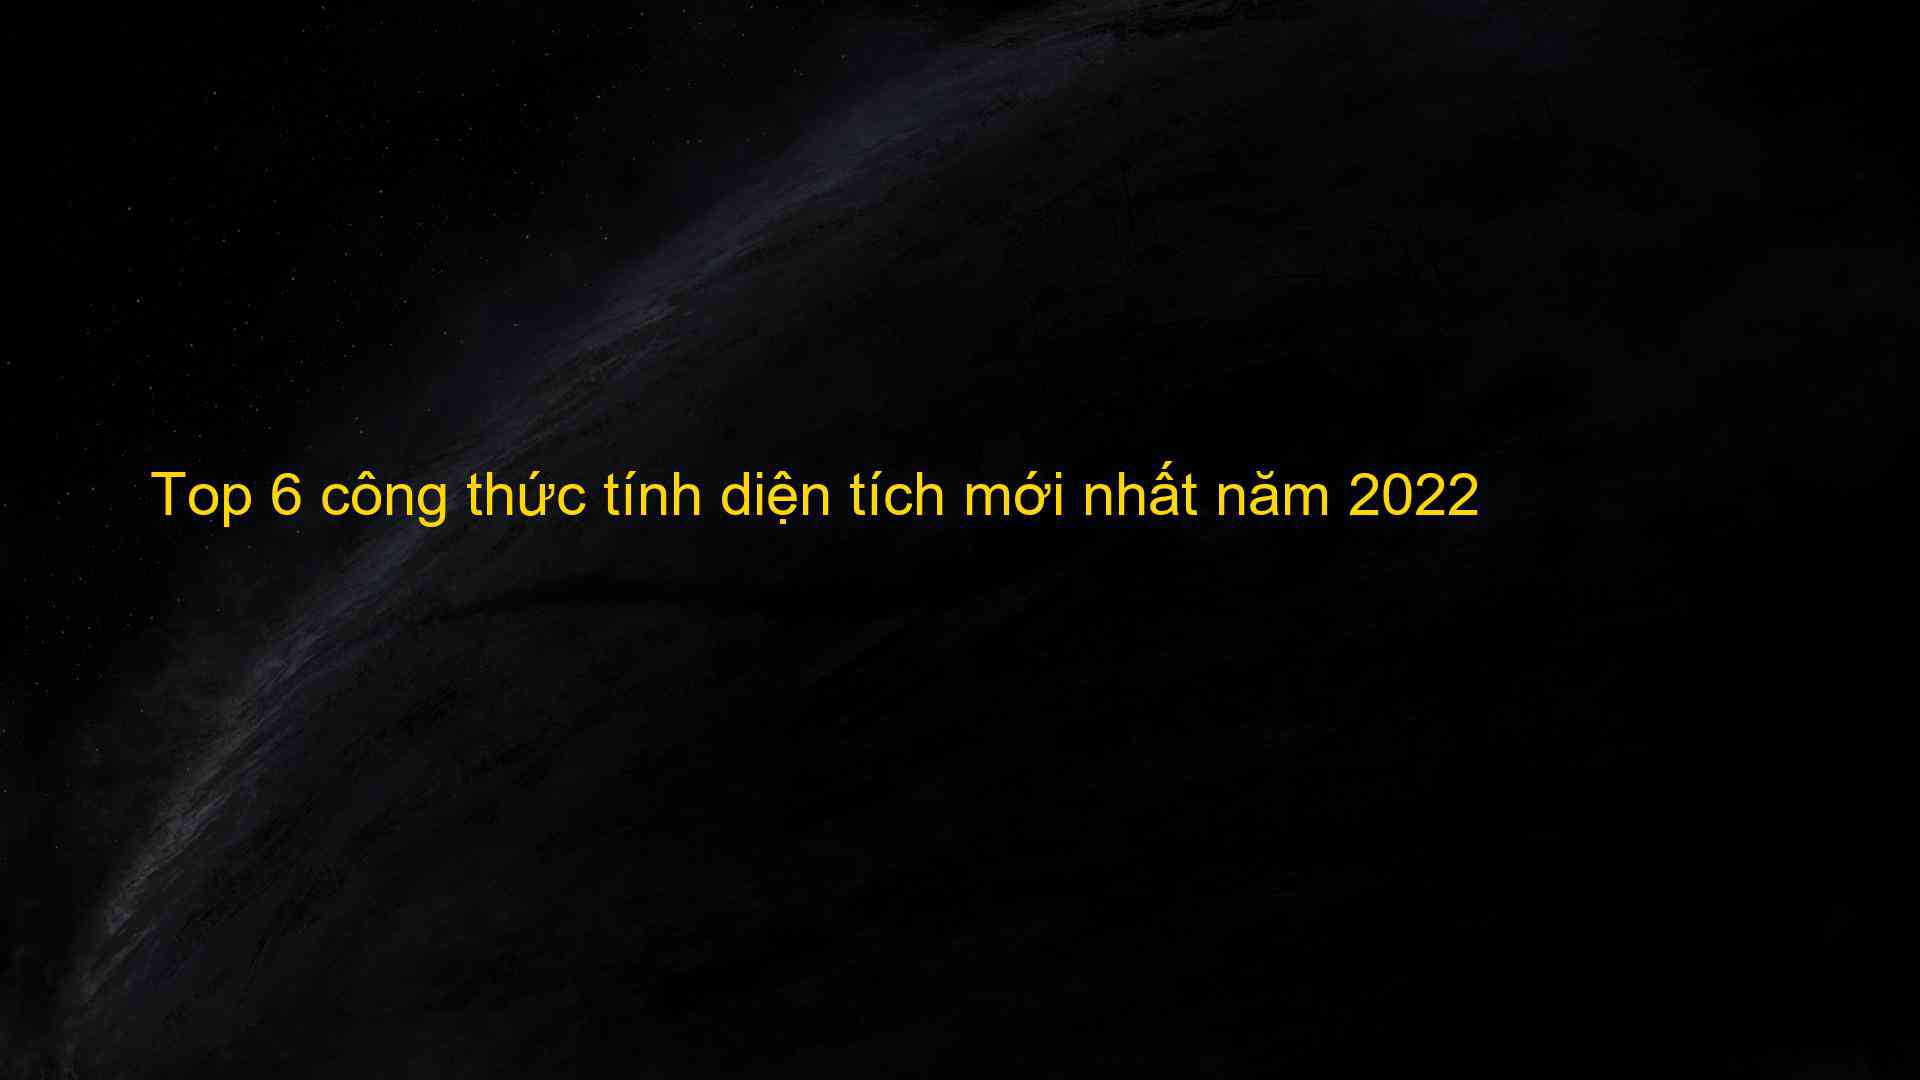 Top 6 cong thuc tinh dien tich moi nhat nam 2022 1659704594